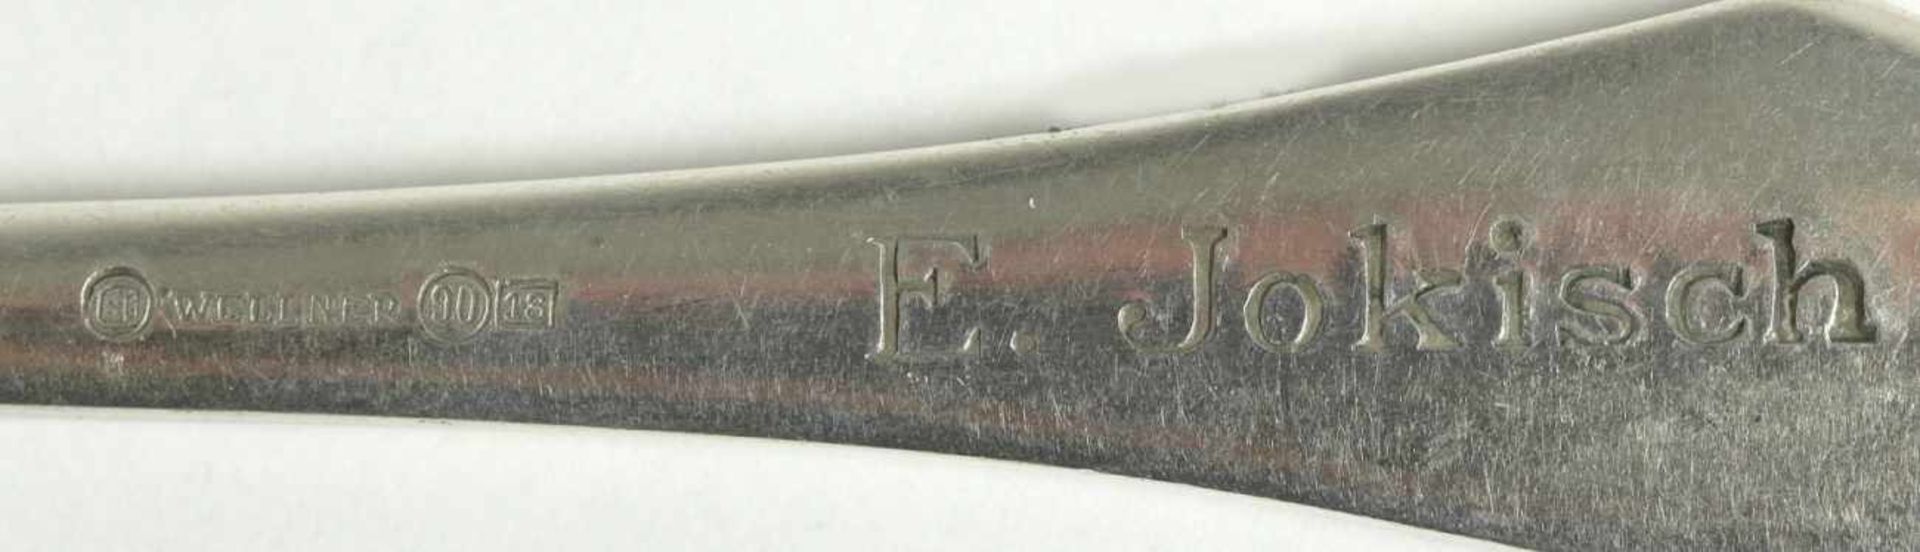 Sechs Hummergabeln, Wellner, 1. Hälfte 20. Jh., versilbert, graviert mit Namenszug, L 20cm - Bild 2 aus 2